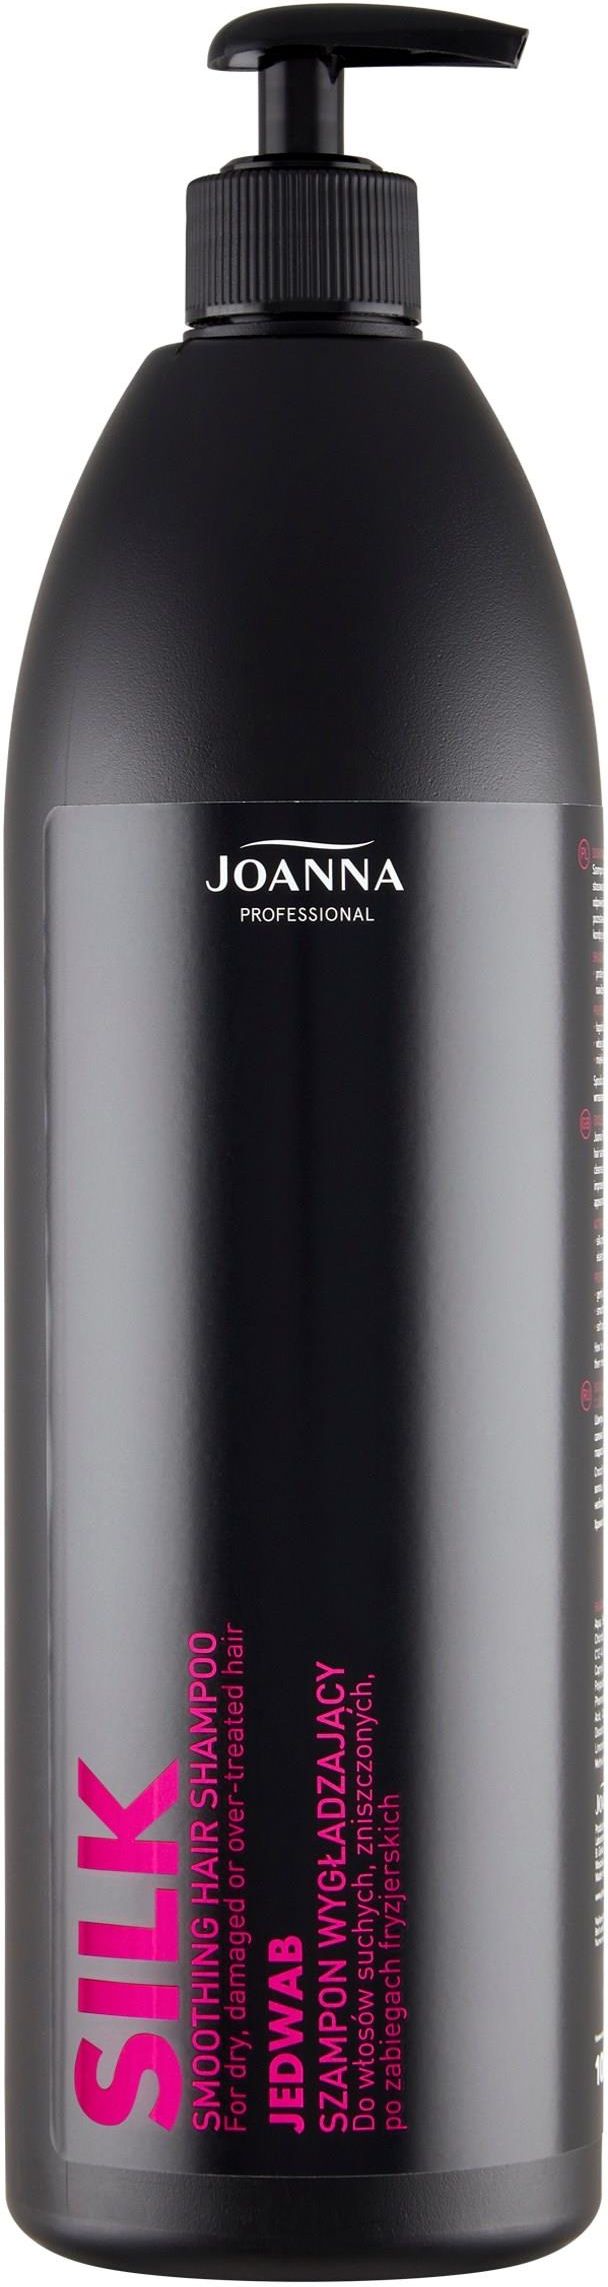 joanna professional szampon wygładzający 1000 ml